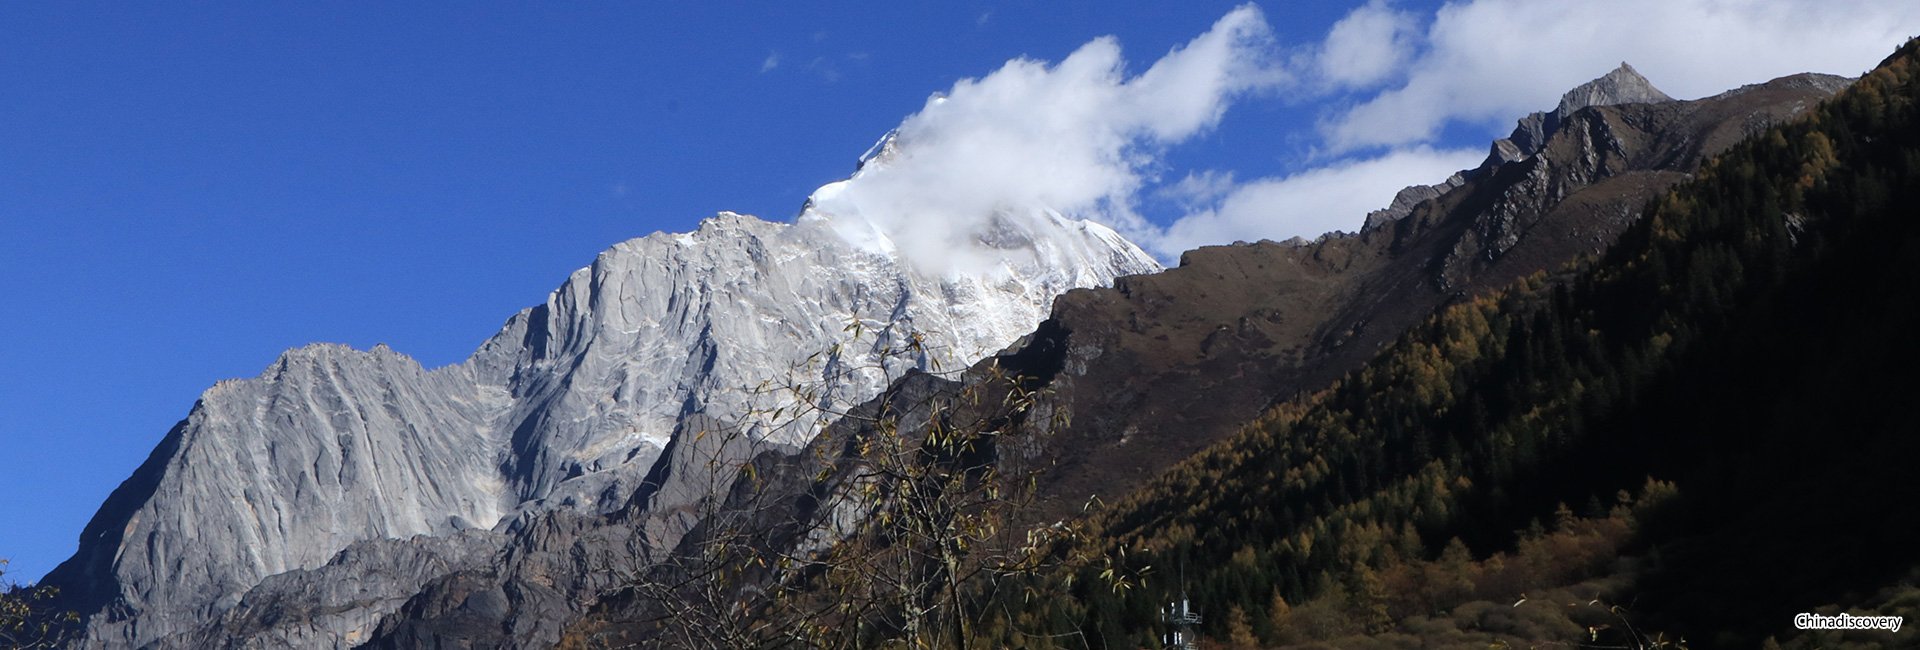 Mount Siguniang In-depth Hiking Tour